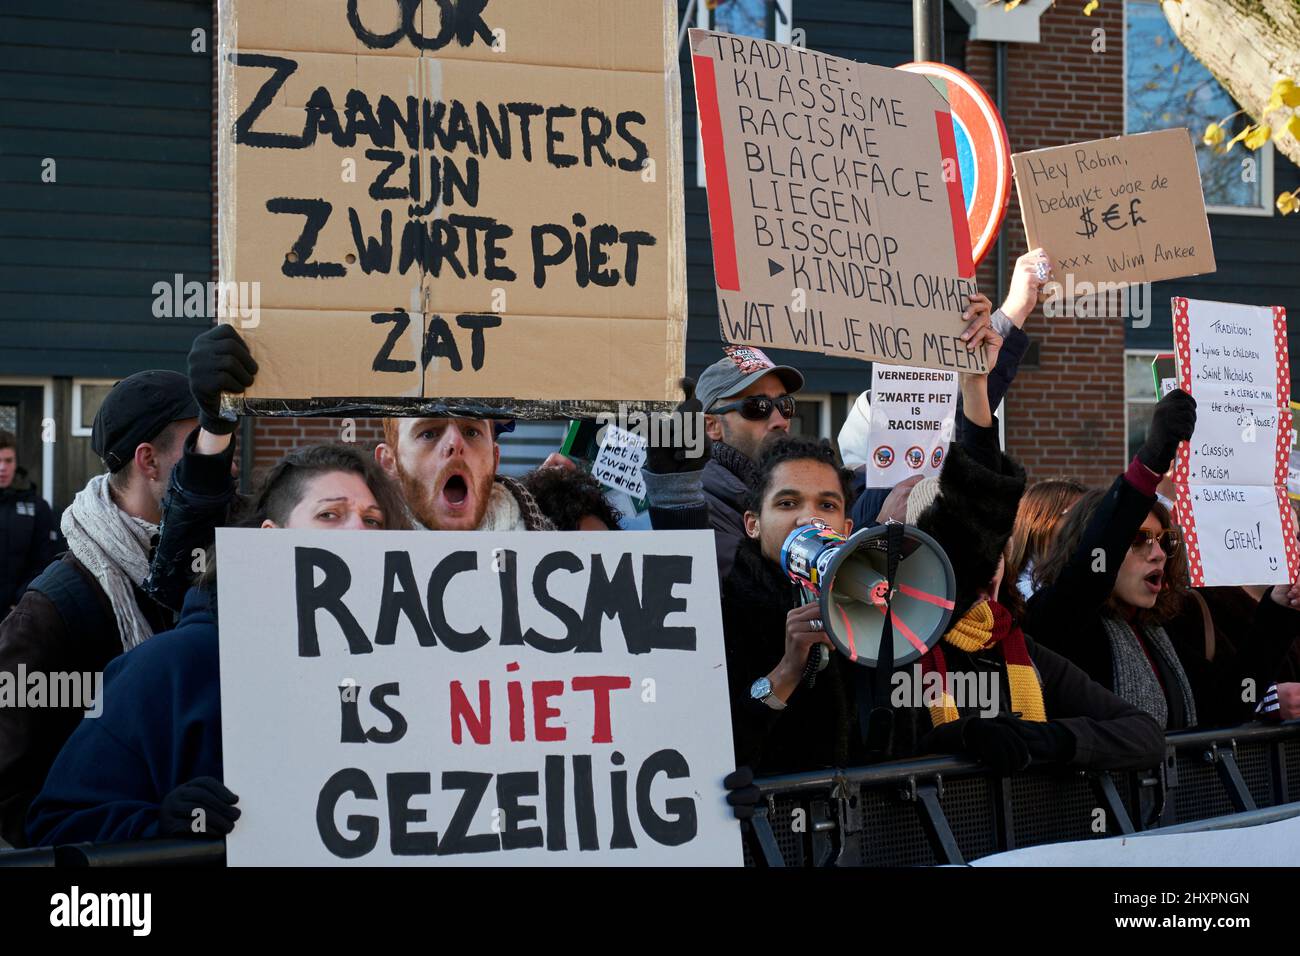 Mehrere Personen, die als Zwarte Piet verkleidet waren, passieren vor der Demonstration der antirassistischen Gruppe in Zaandam Stockfoto